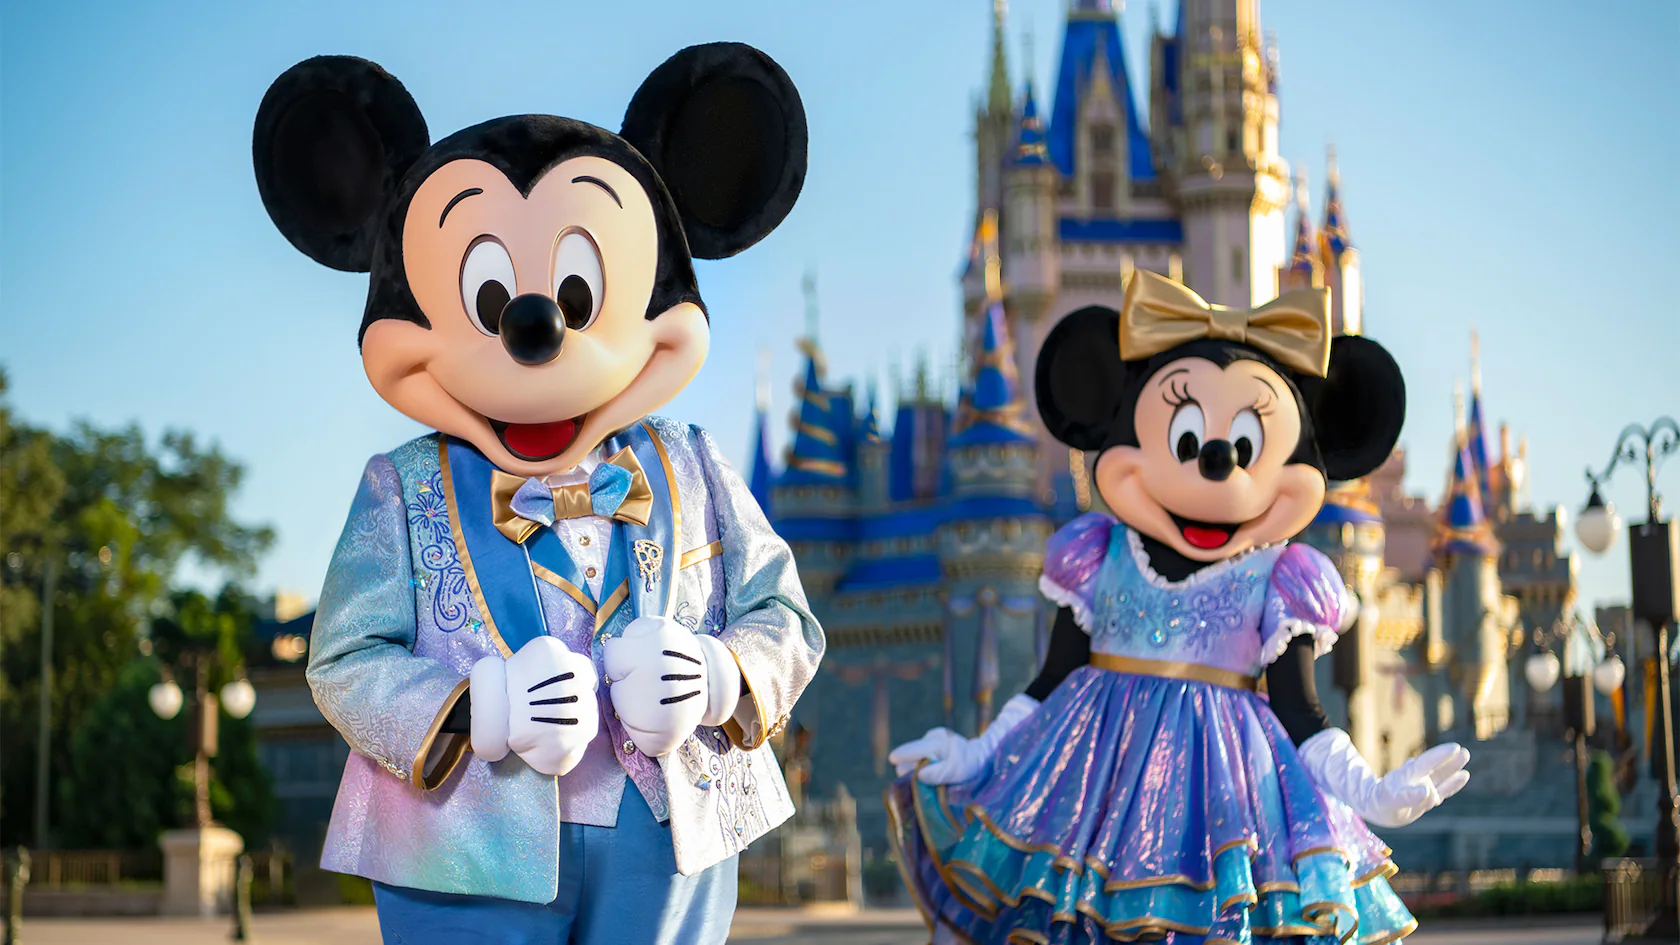 Imagen de los personajes de Disney Mickey y Minnie mouse fuera del metaverso del resort